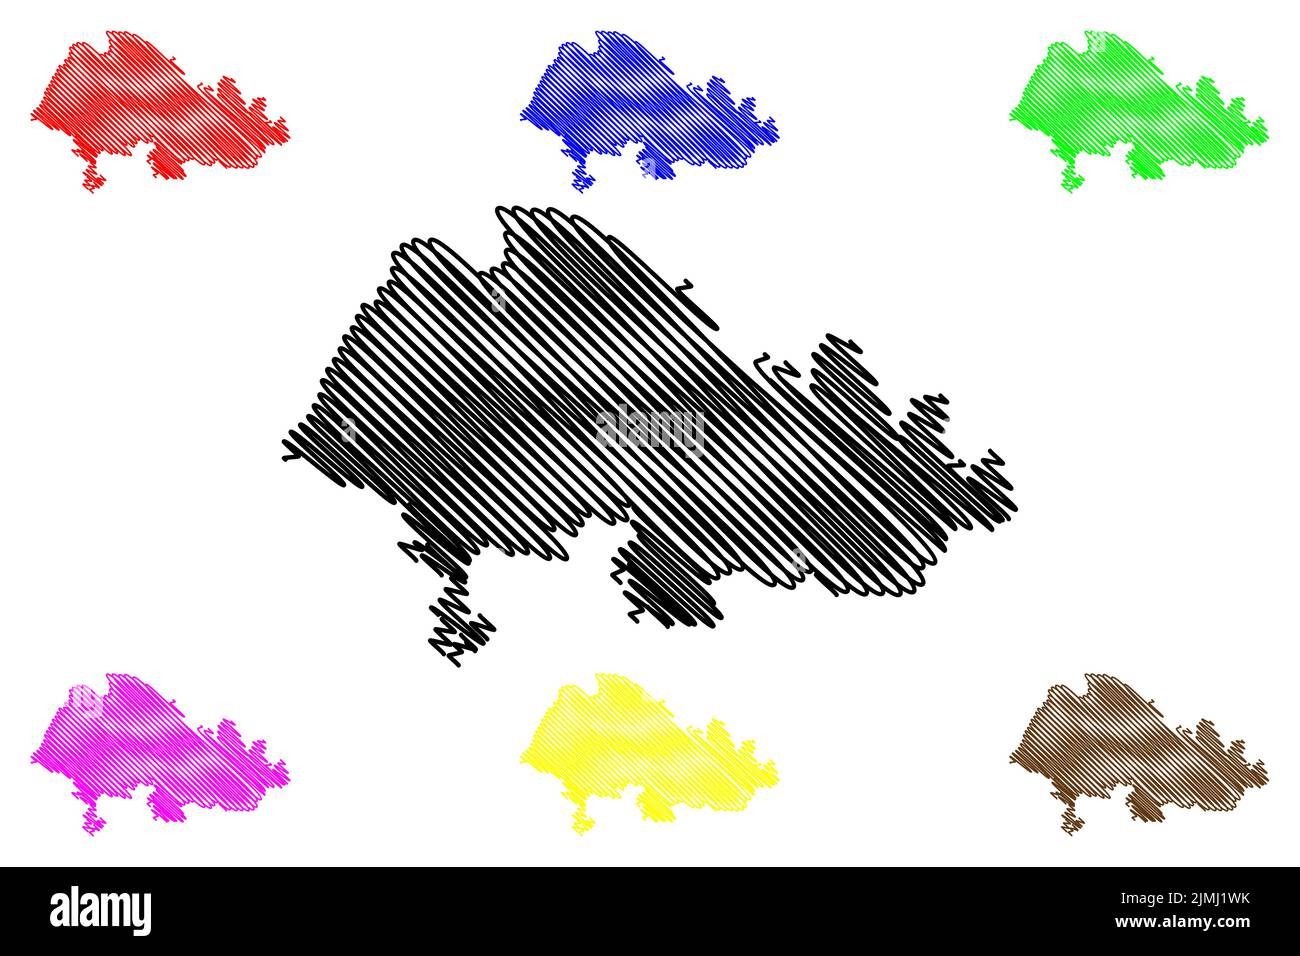 Isola di Ulva (Regno Unito di Gran Bretagna e Irlanda del Nord, Scozia) illustrazione vettoriale mappa, schizza mappa isola di Ulbha Illustrazione Vettoriale